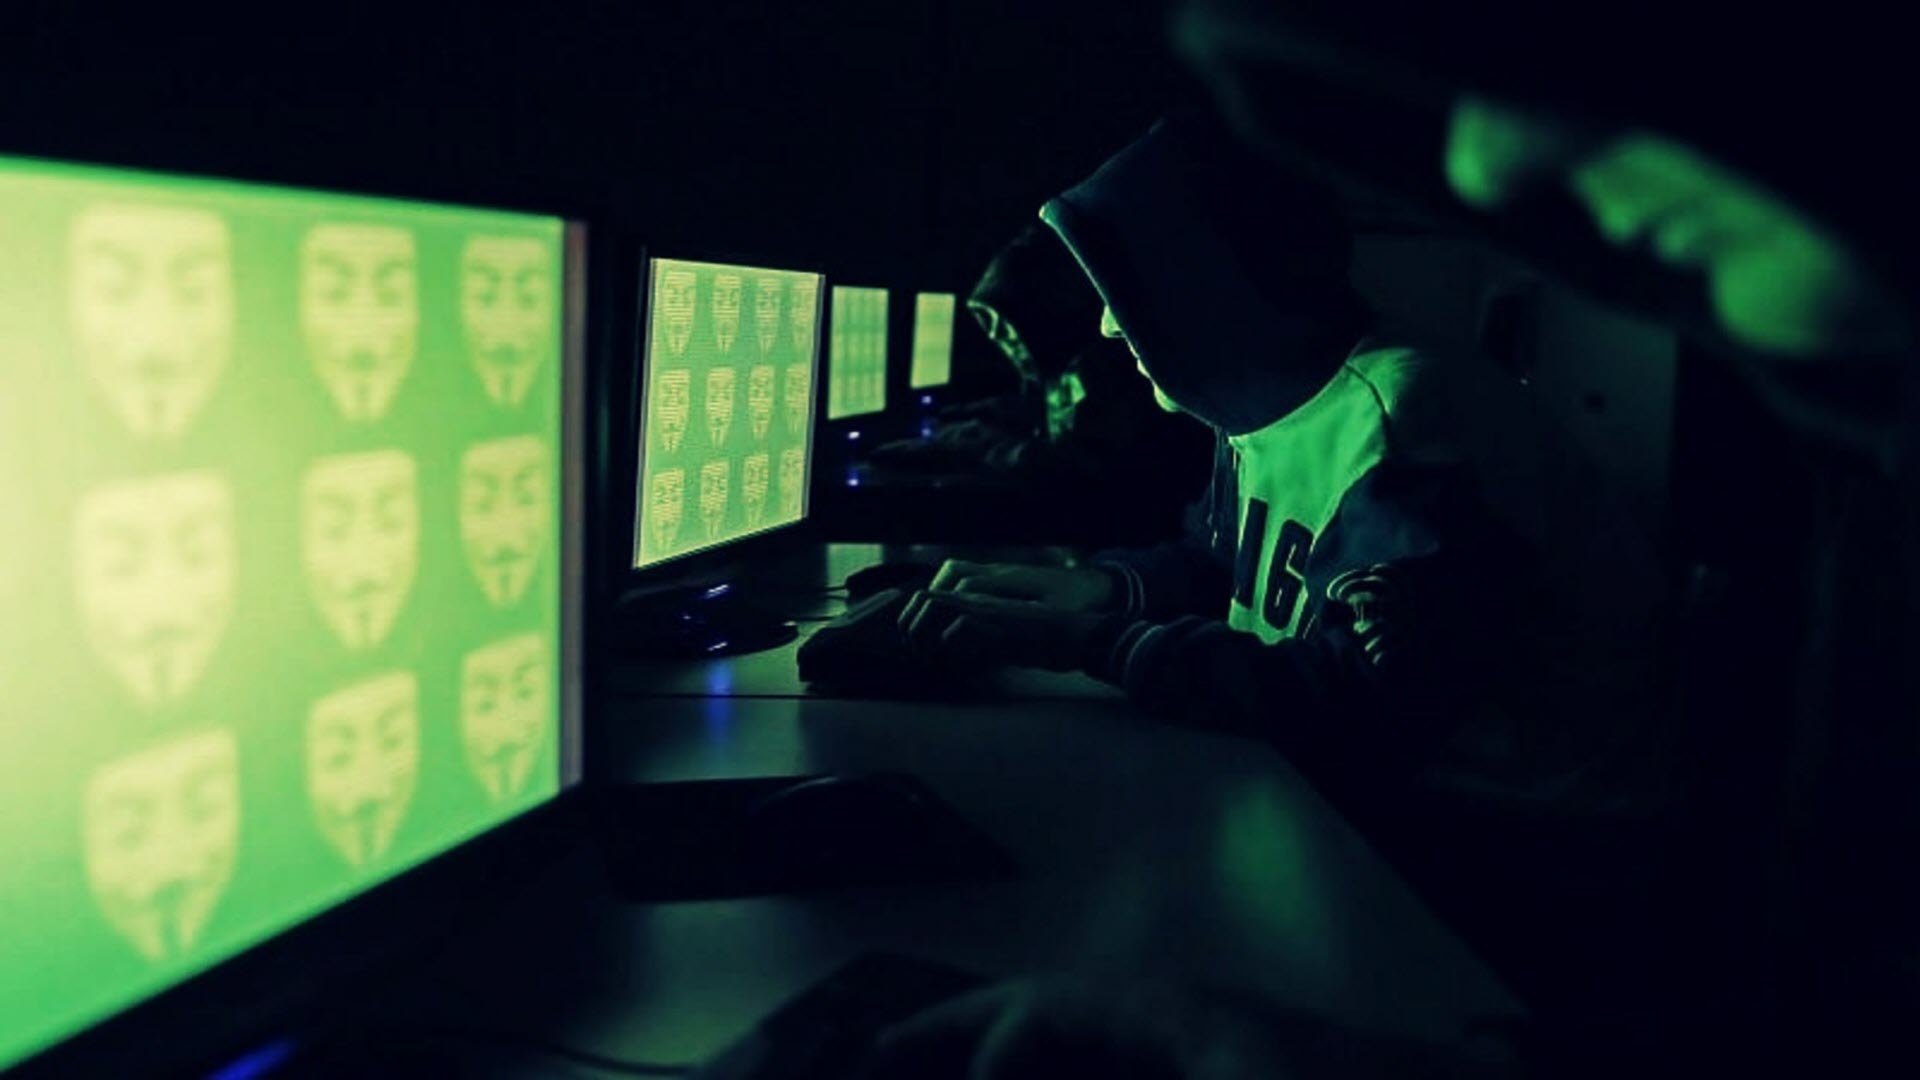 Tổng hợp 99+ ảnh hacker full hd ngầu, đẹp, chất lừ | Seotrends.com.vn